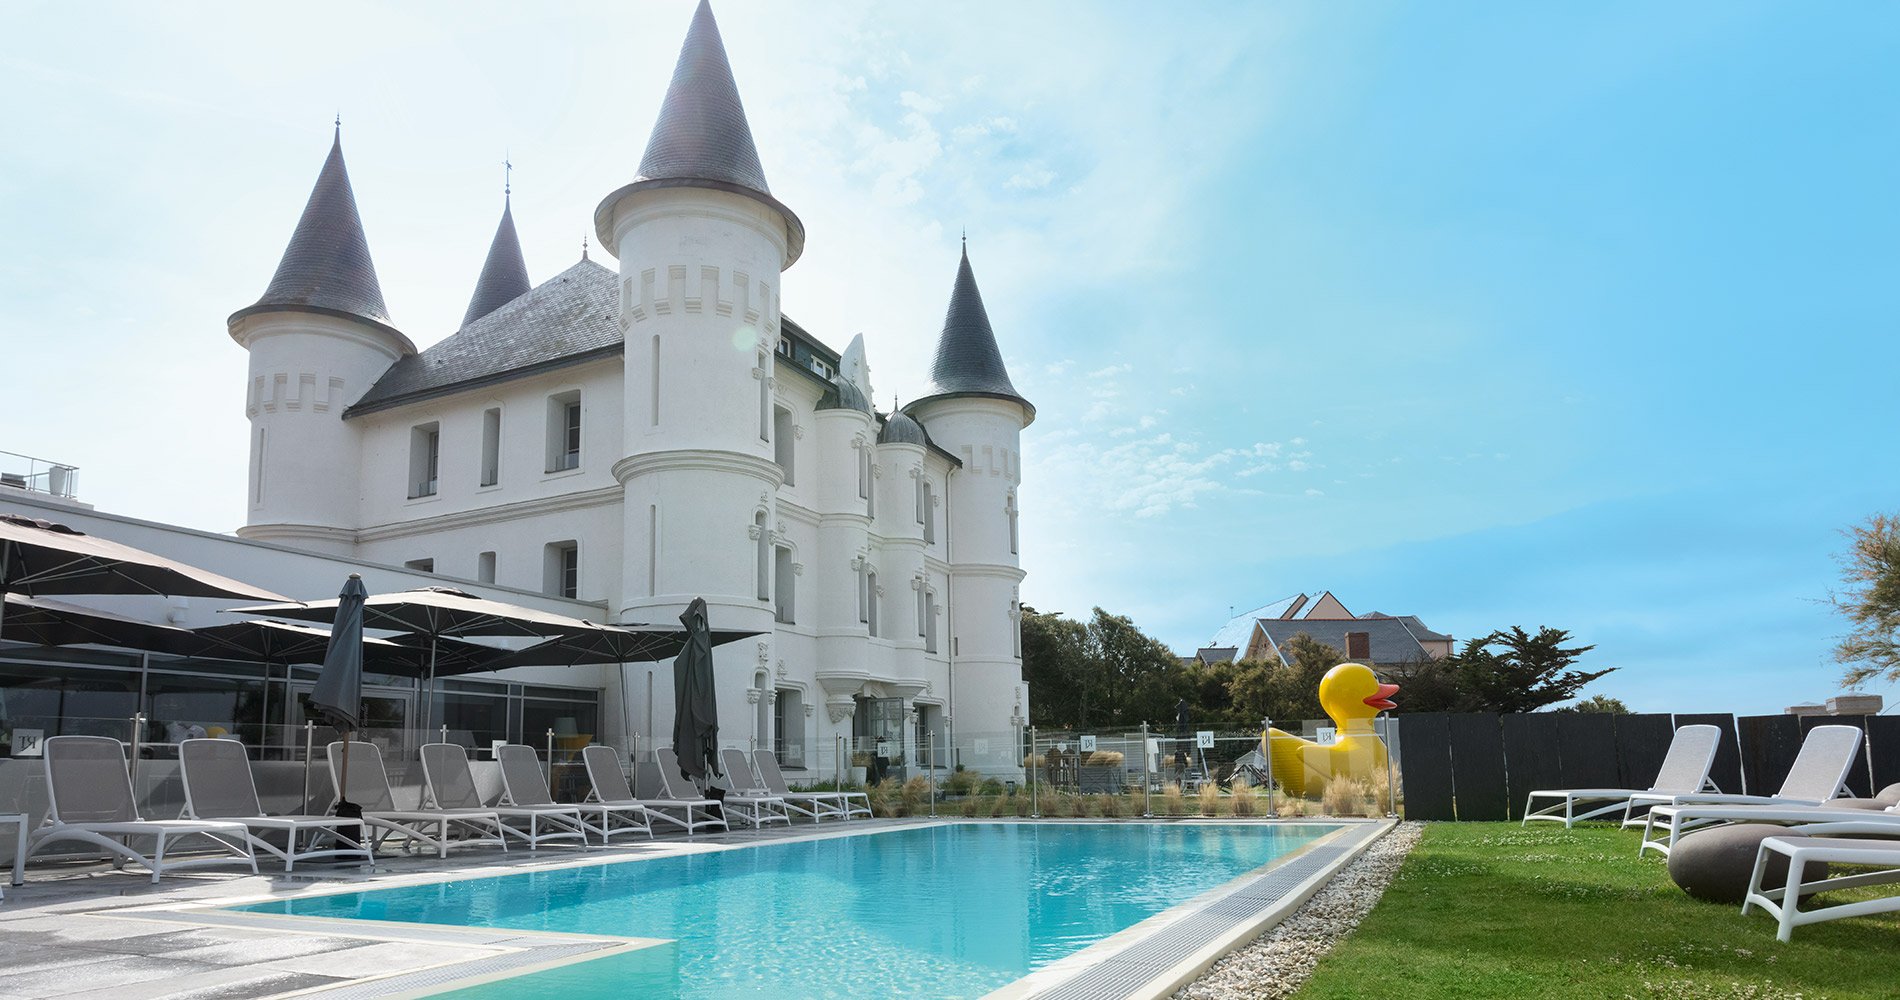 luxury hotel Château des Tourelles Hôtel 4 stars Thalasso Spa La Baule France swimming pool